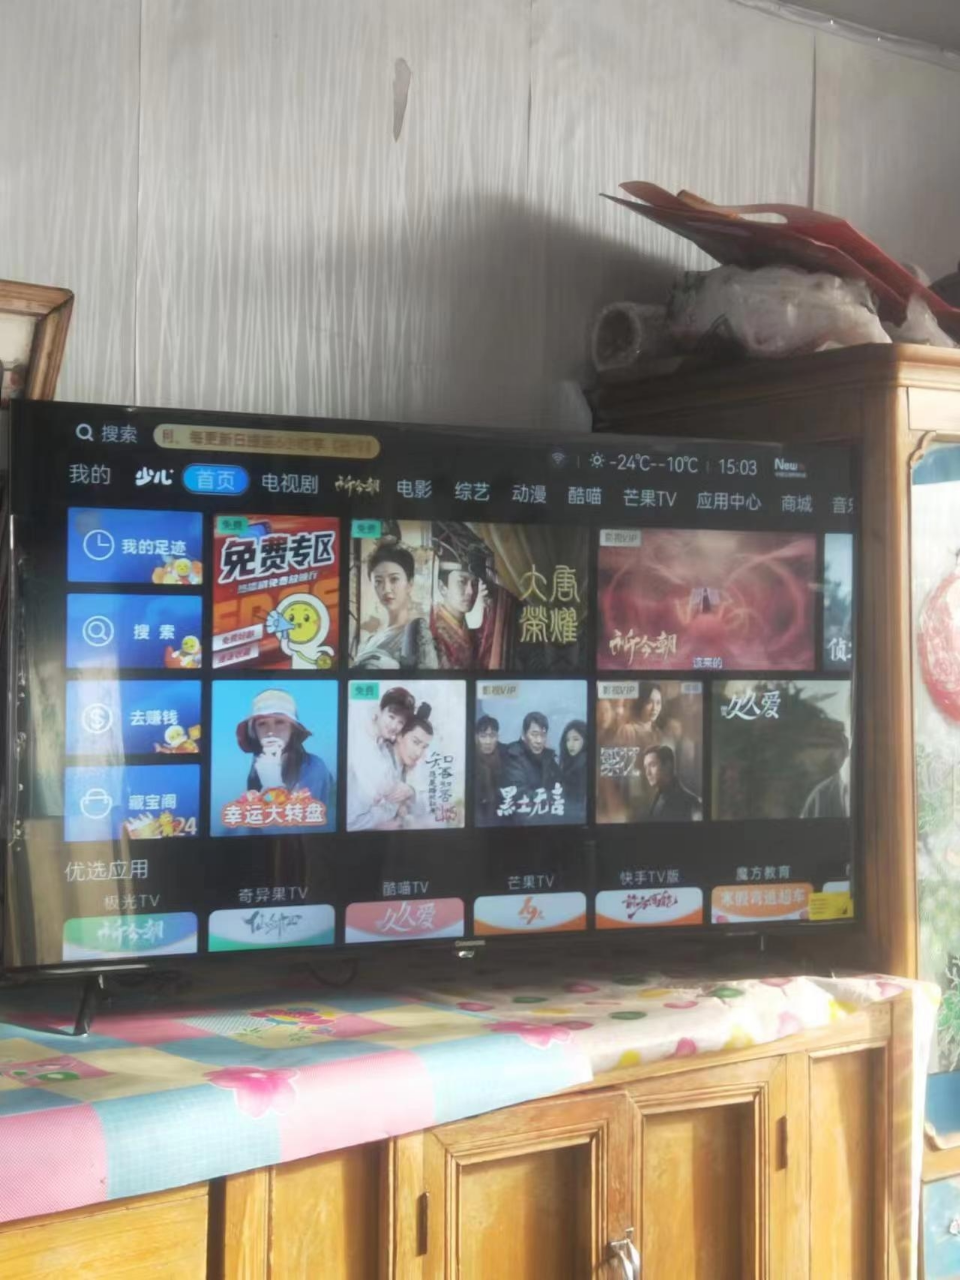 长虹 43英寸智能网络全面屏教育电视 4K解码 蓝光高清 手机投屏 平板液晶电视机(黑色)晒单图